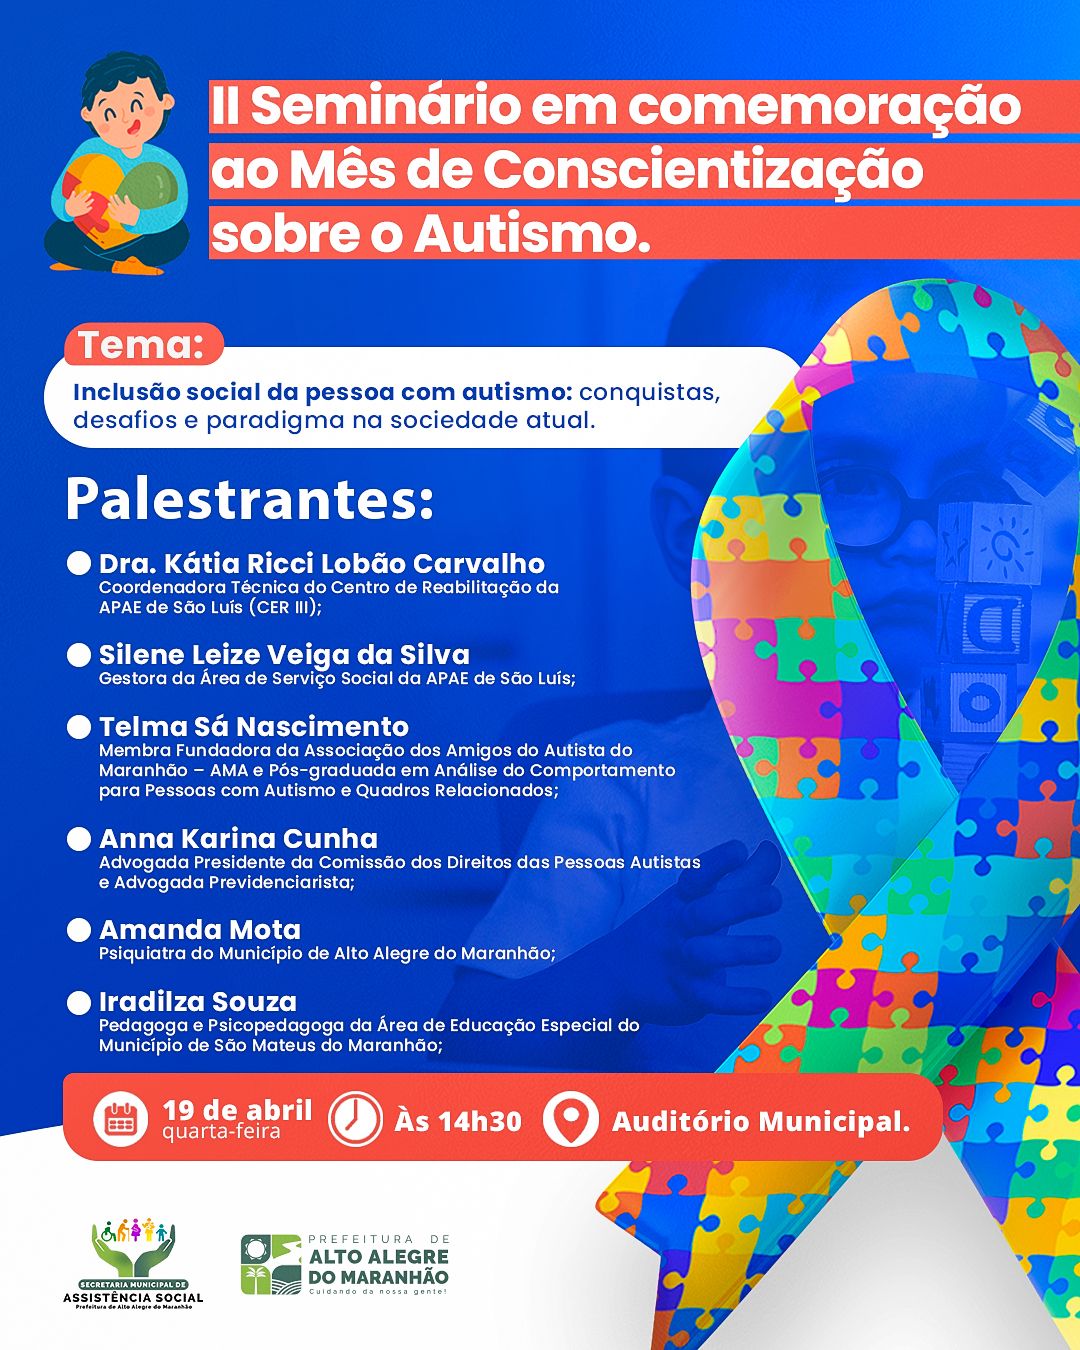 A Prefeitura de Alto Alegre do Maranhão convida a população para participar do II Seminário em comemoração ao mês de conscientização sobre o autismo